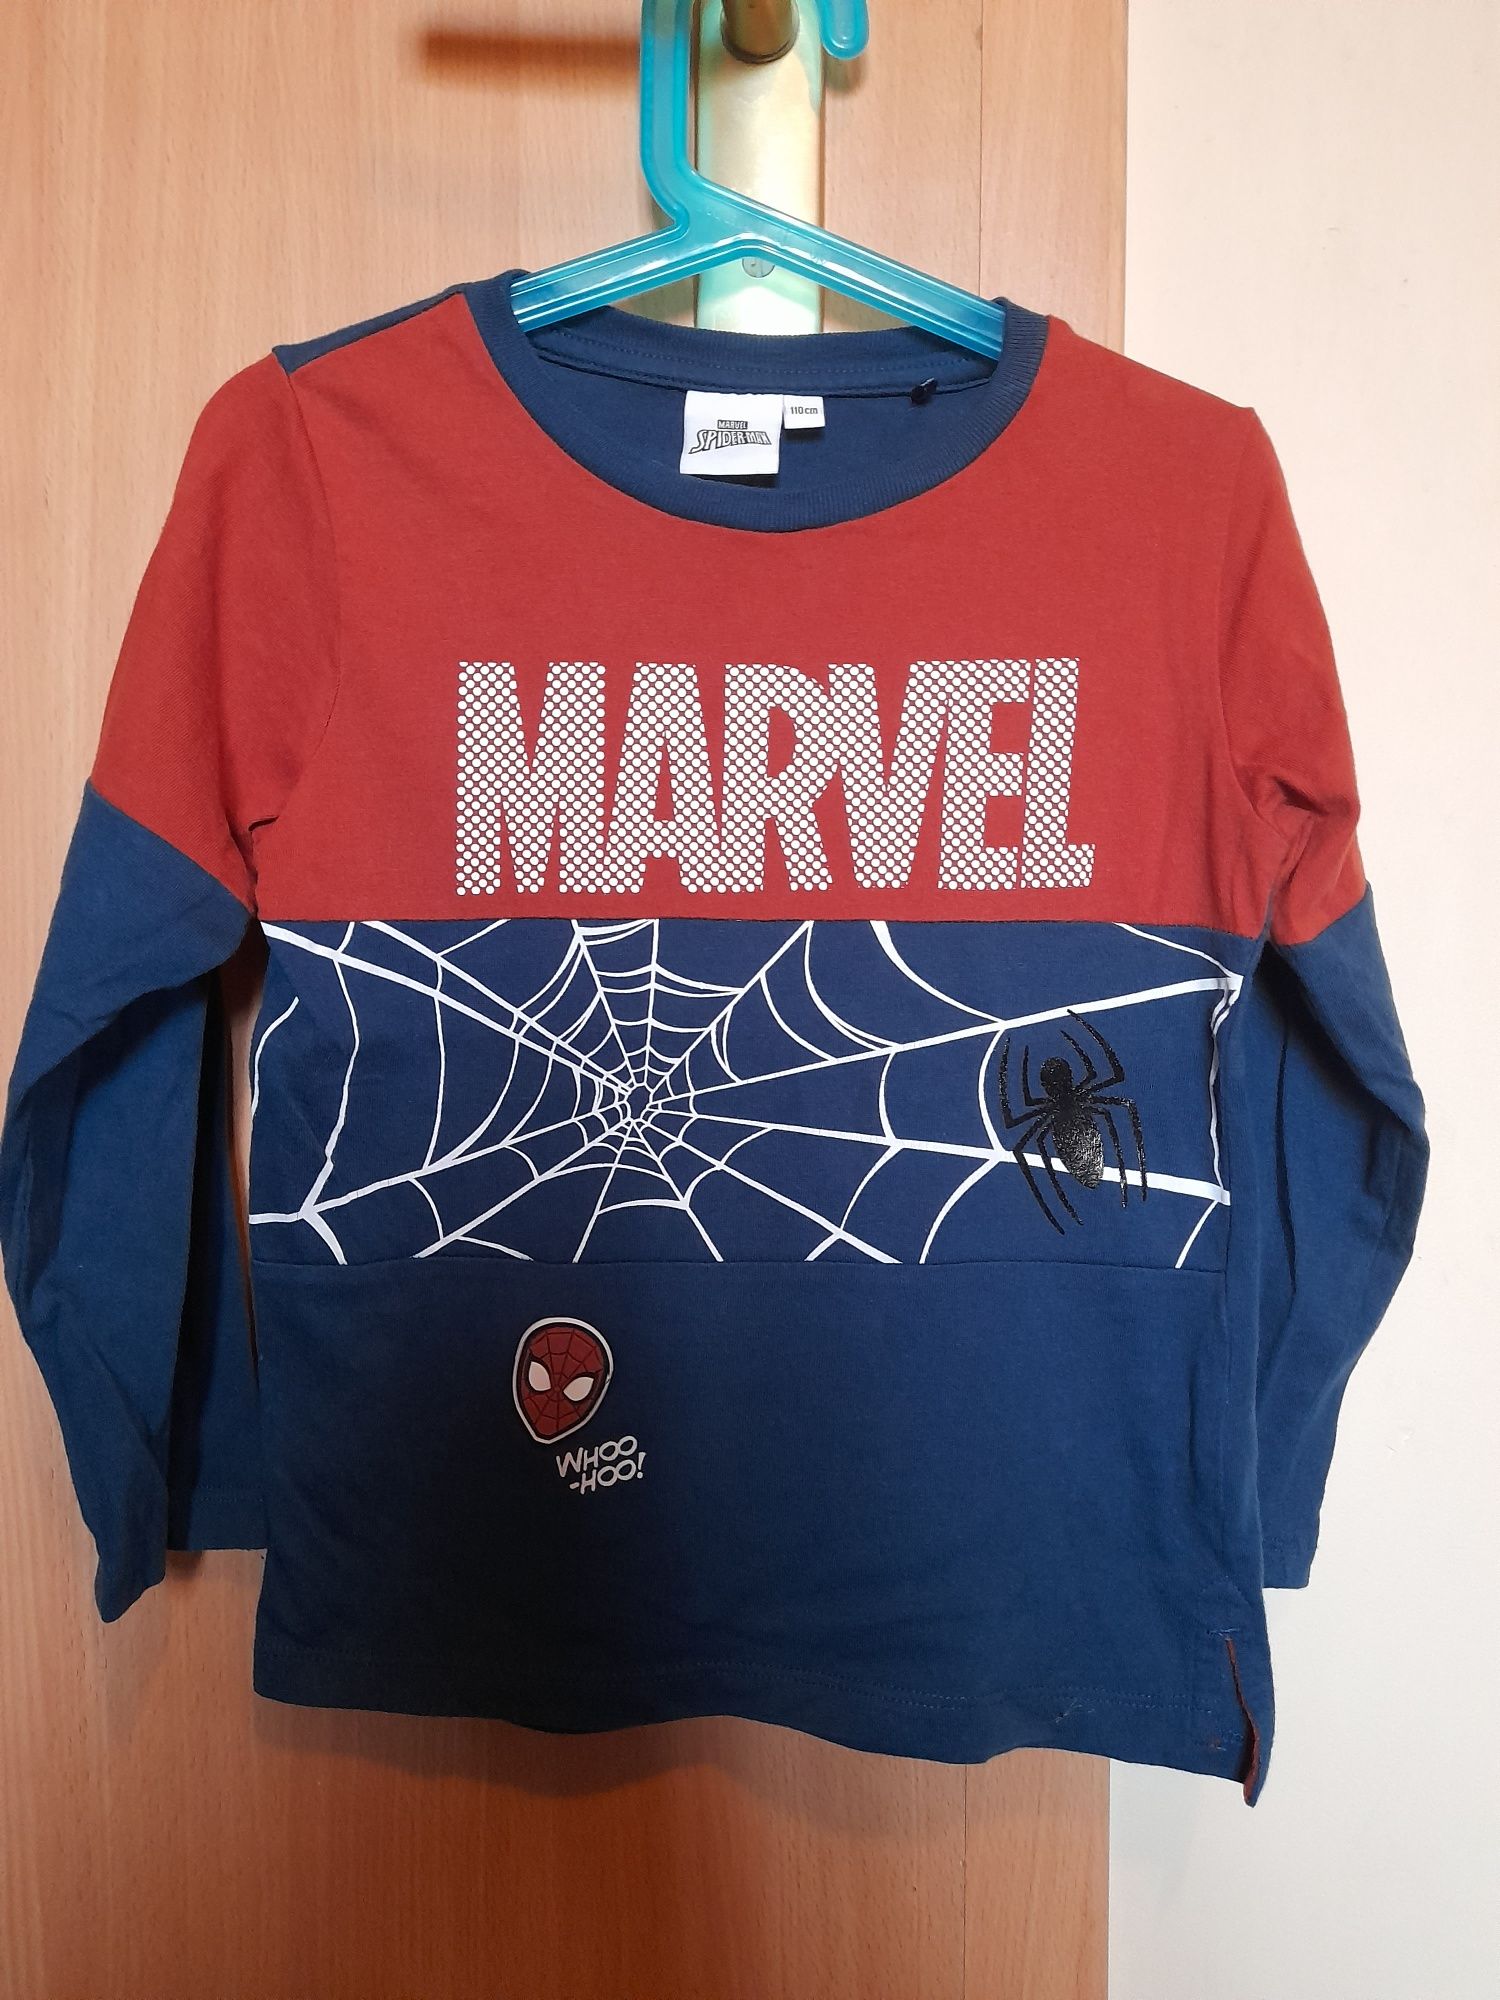 Bluzka Marvel Spiderman dlugi rękaw rozmiar 110